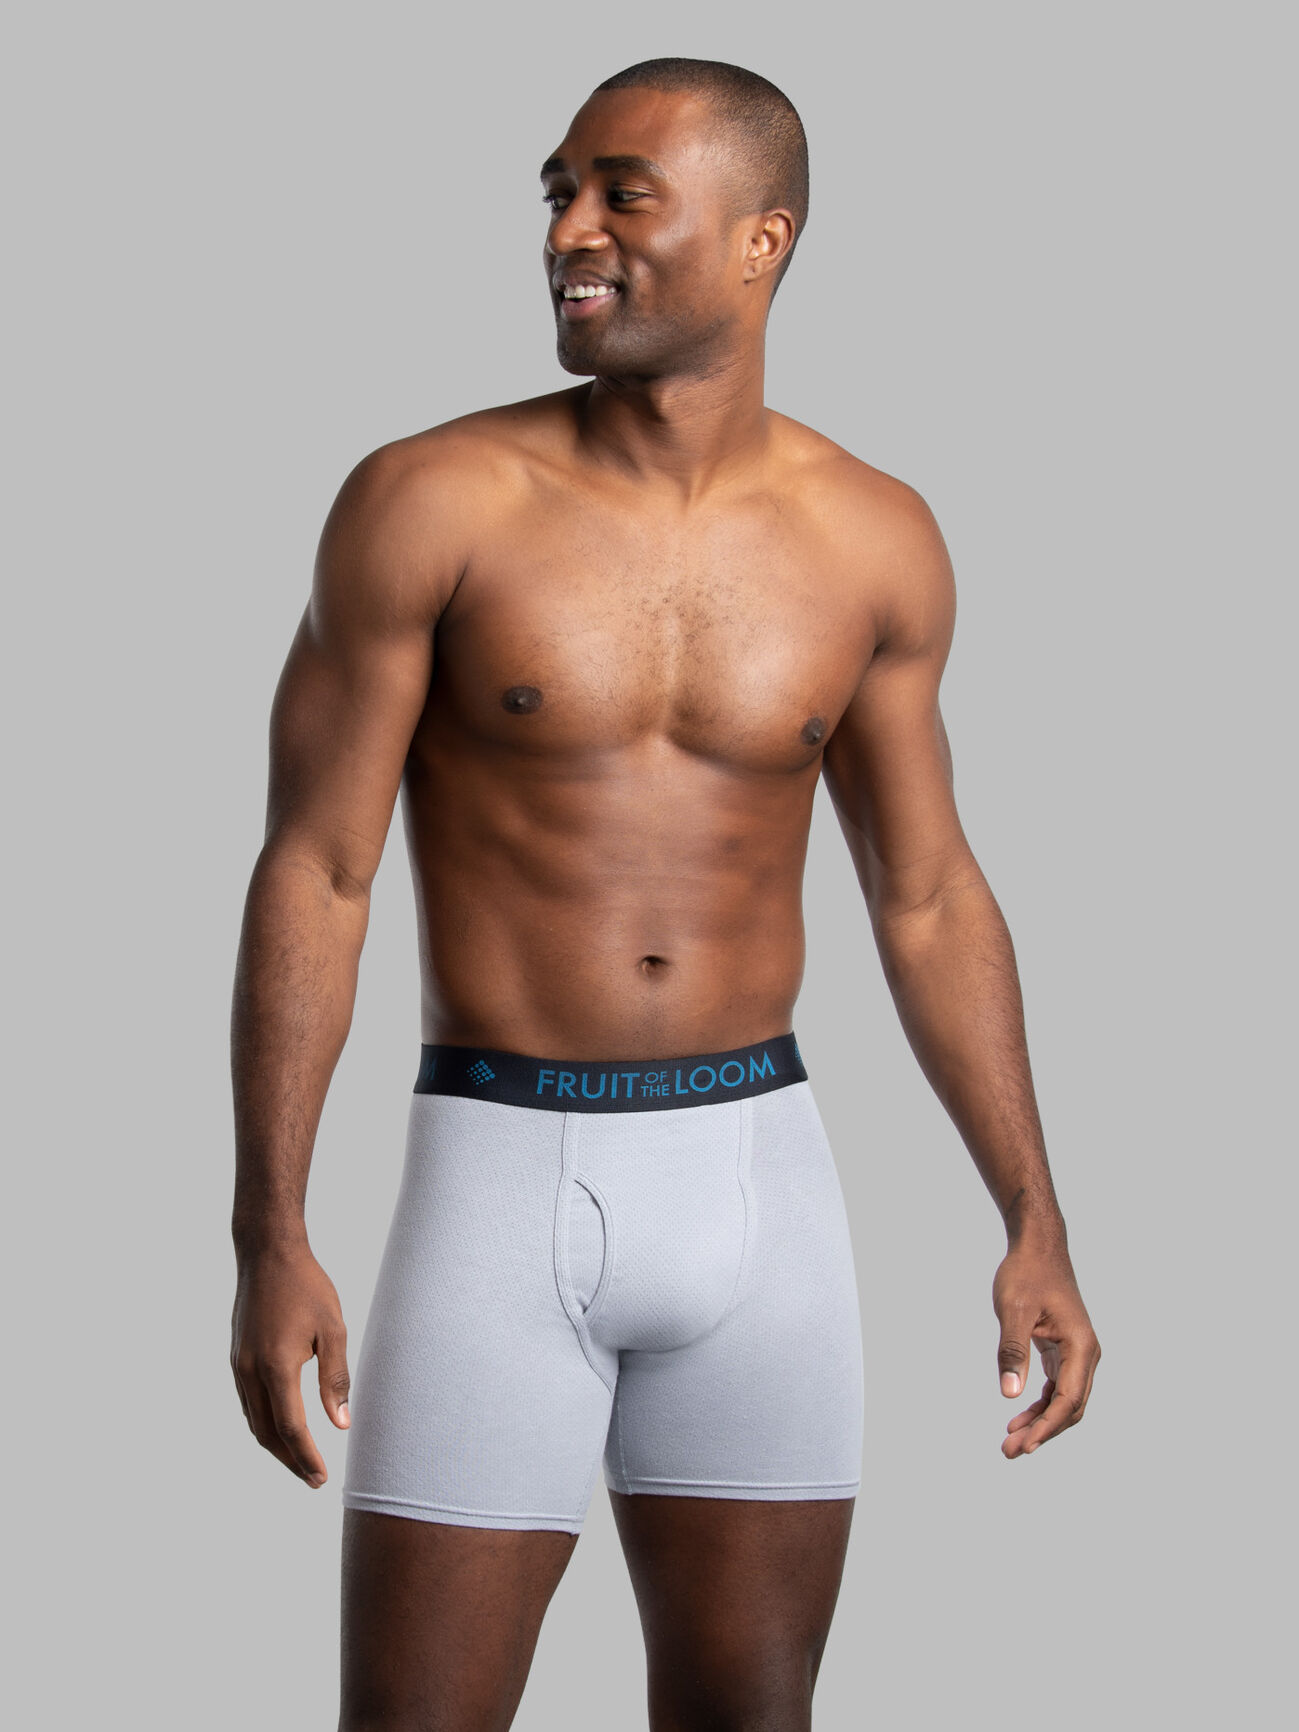 Lycra Cotton Printed Men Underwear, Type: Briefs